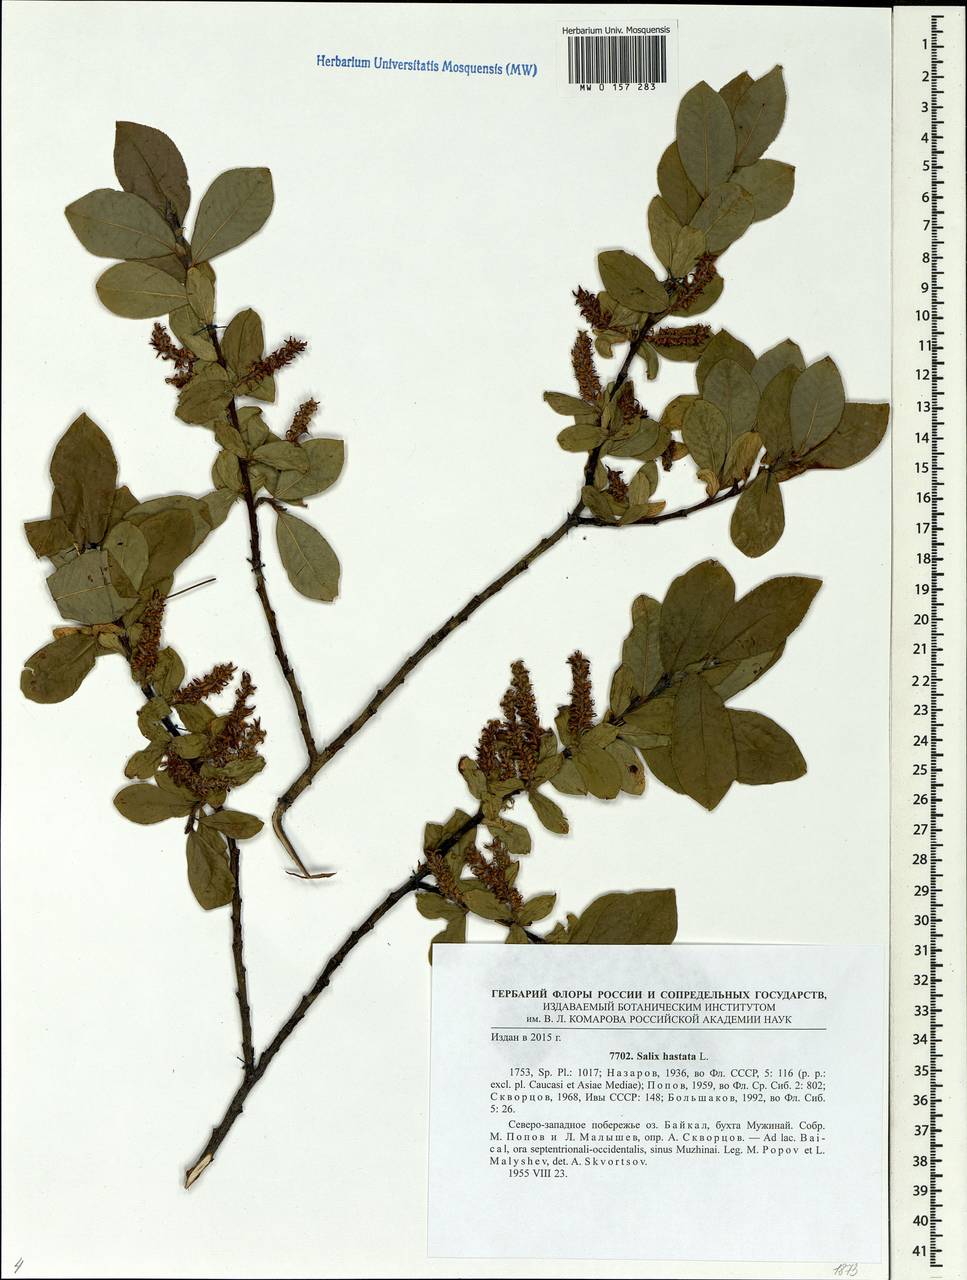 Salix hastata L., Siberia, Baikal & Transbaikal region (S4) (Russia)